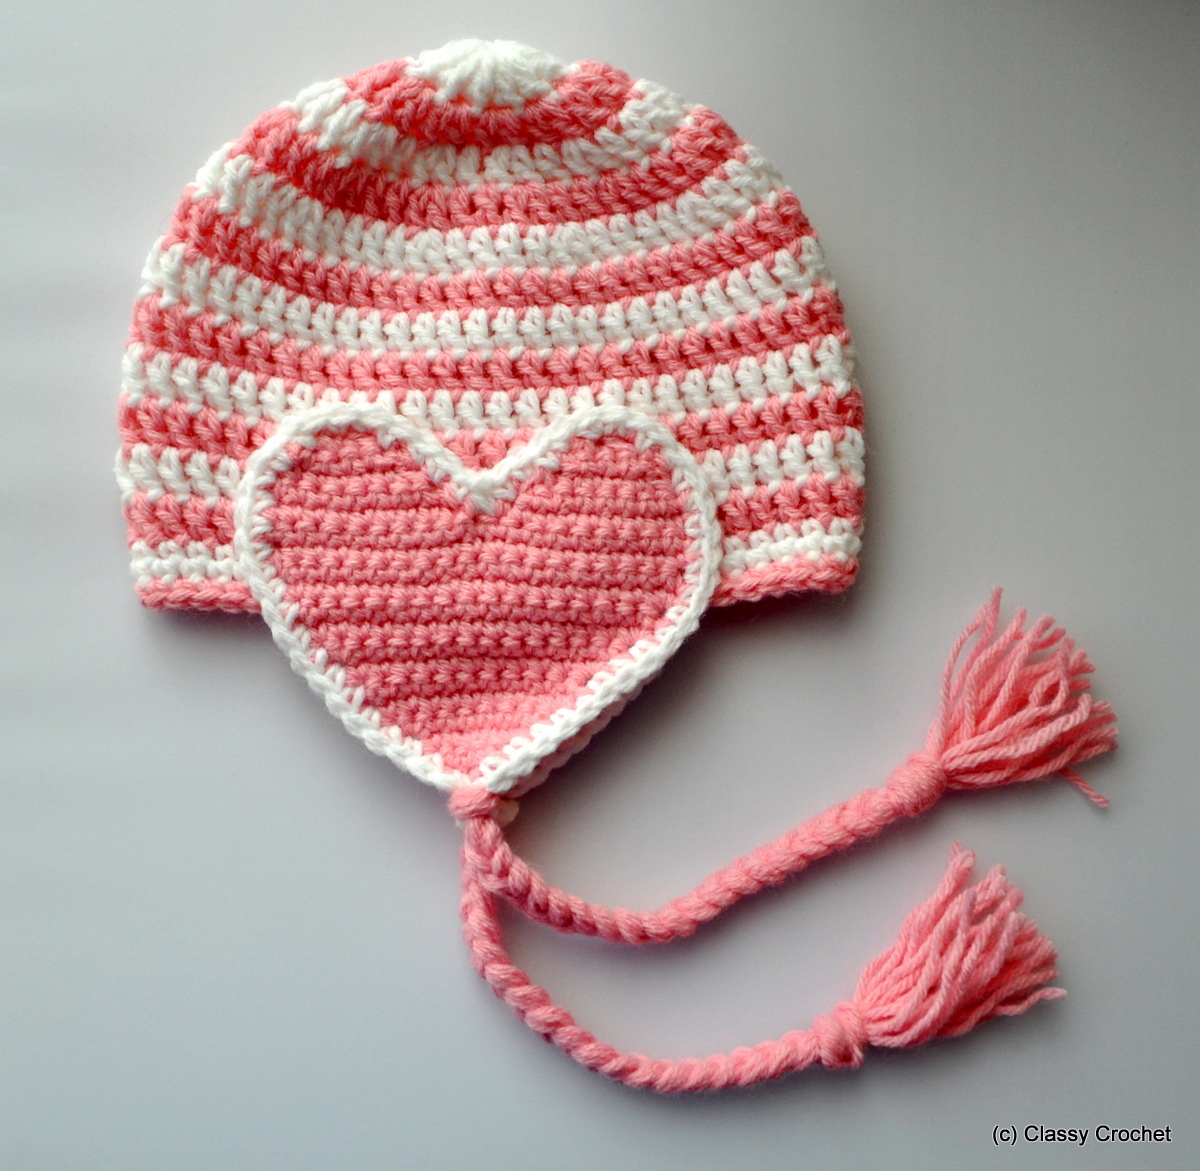 Baby Earflap Hat Crochet Pattern Free Free Pattern Crochet Valentine Heart Earflap Hat Classy Crochet